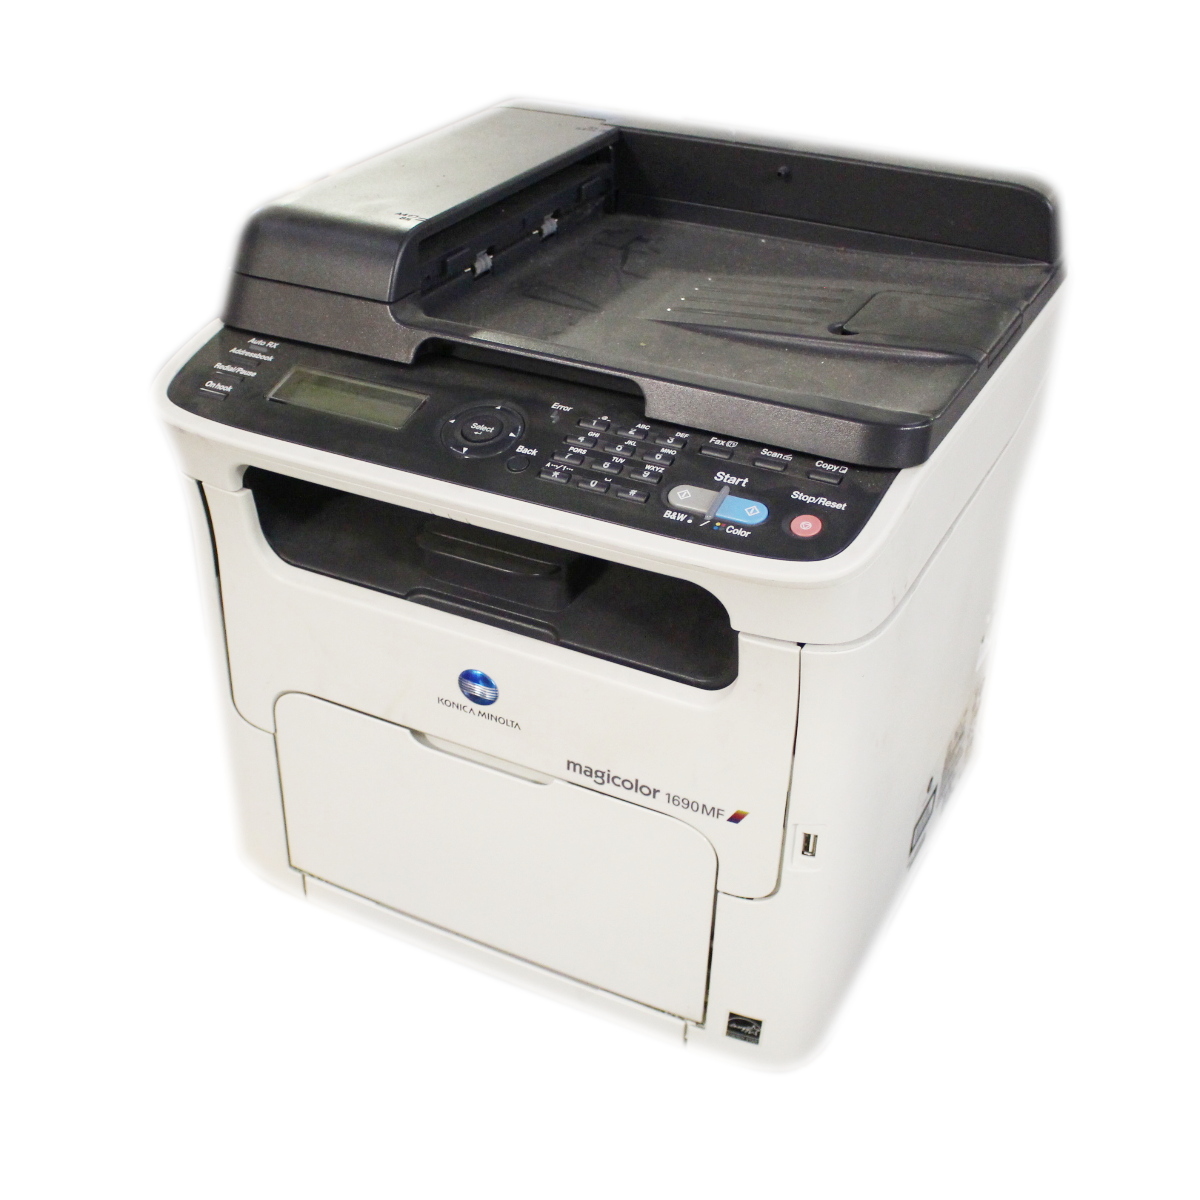 Software Printer Magicolor 1690Mf - 5health-care